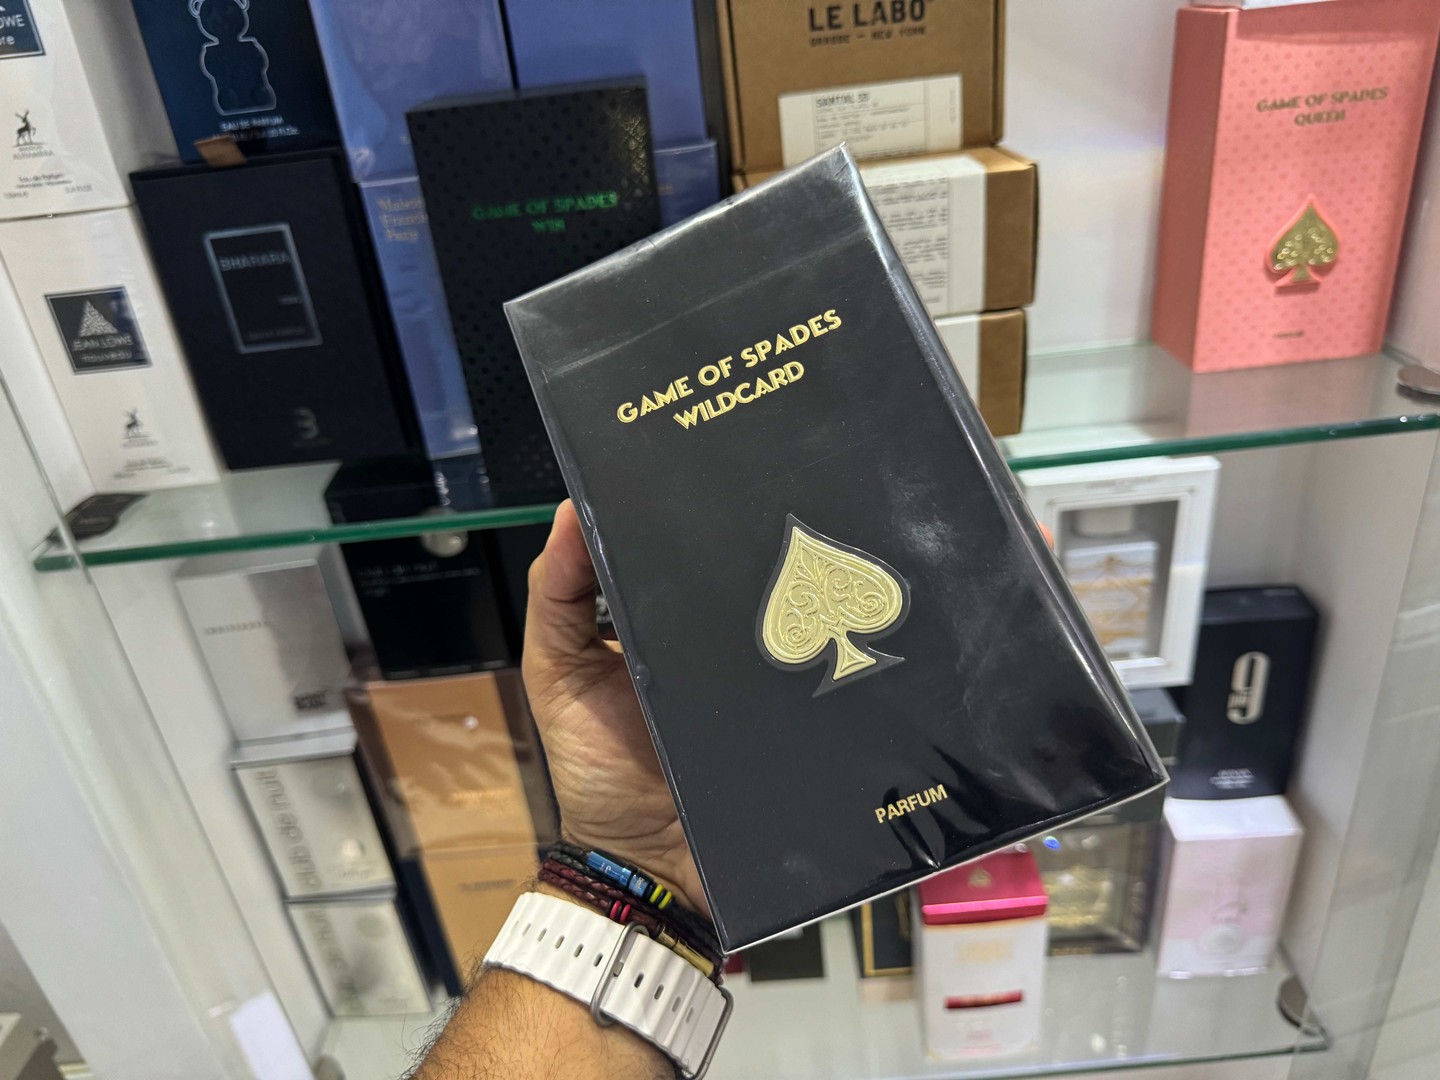 joyas, relojes y accesorios - Perfumes Jo Milano Paris Game of Spades WILCARD 100ML Nuevo, RD$ 5,800 NEG